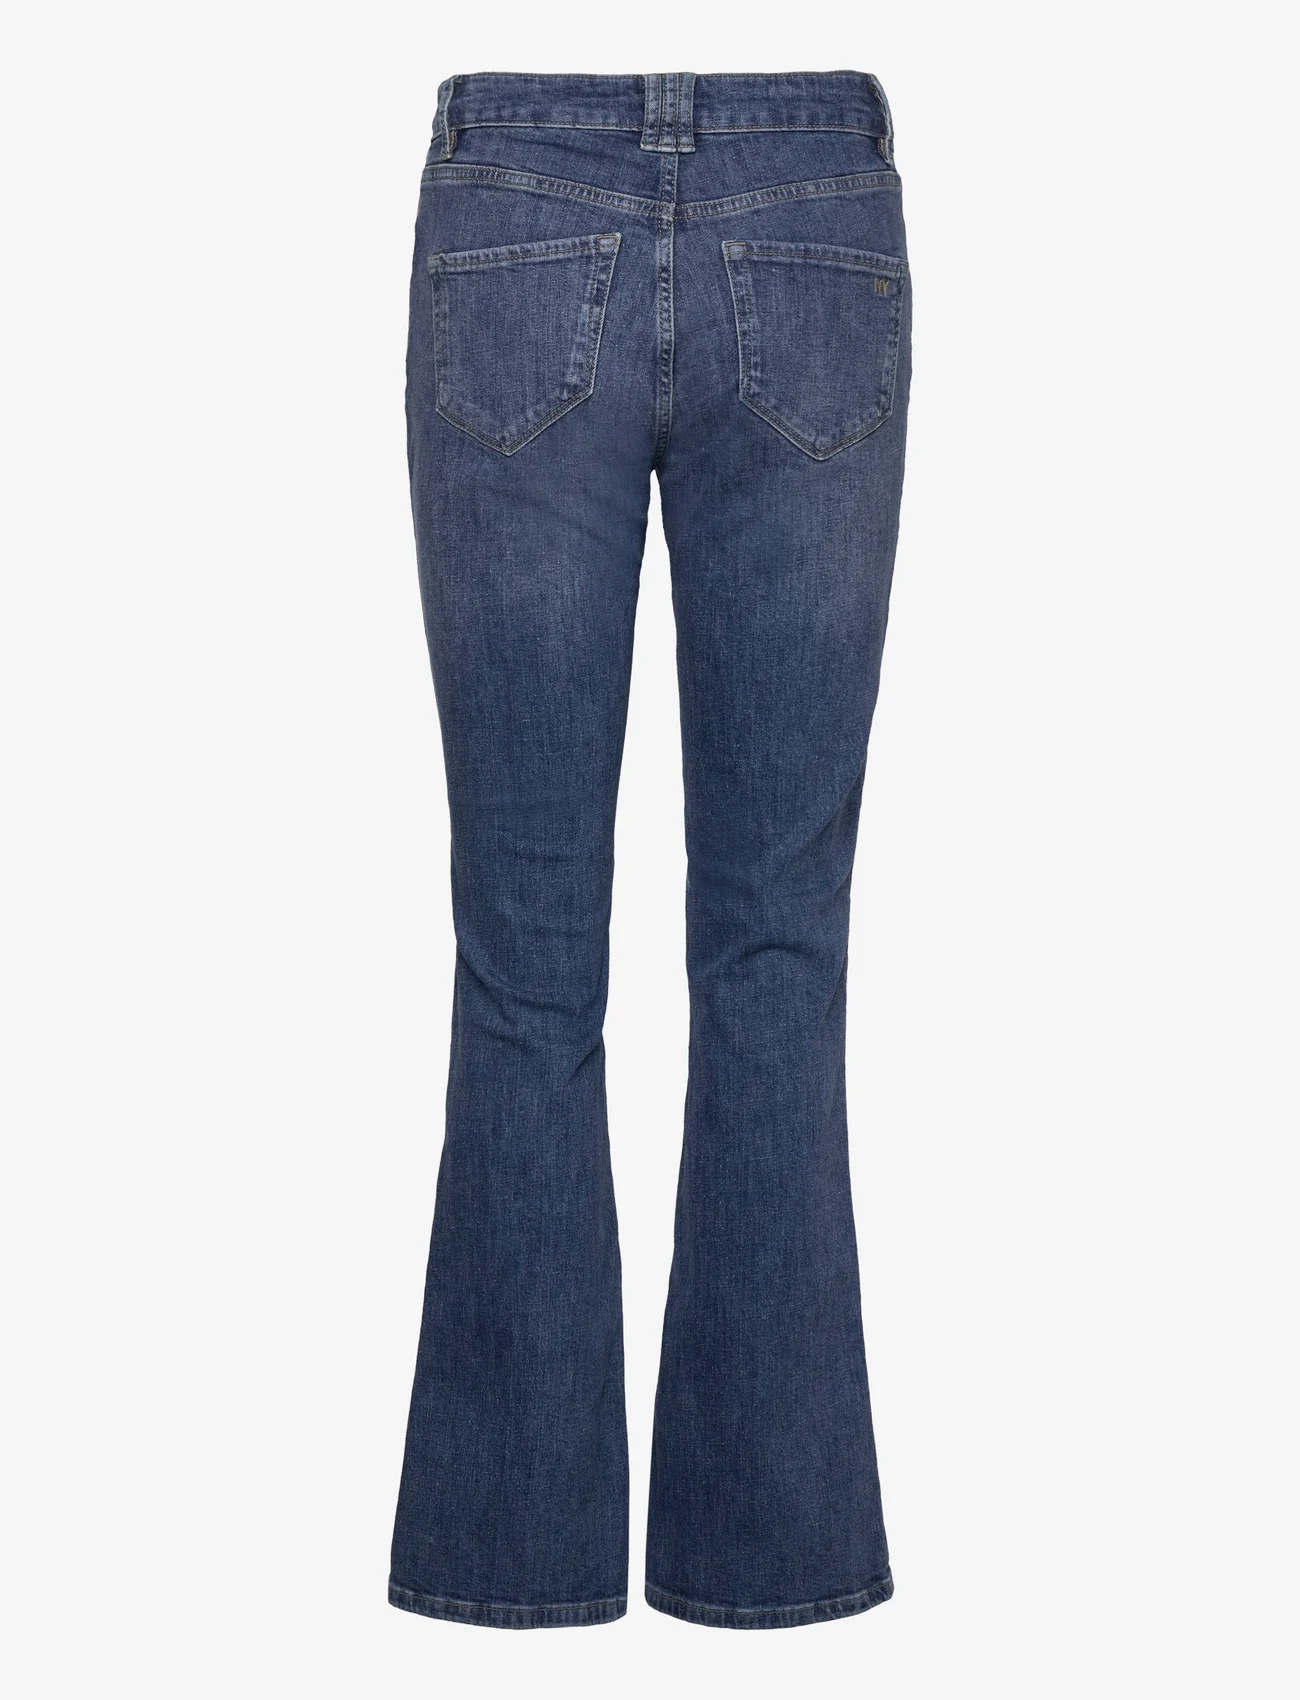 IVY Copenhagen - IVY-Tara Jeans Wash Liverpool Stree - schlaghosen - denim blue - 1